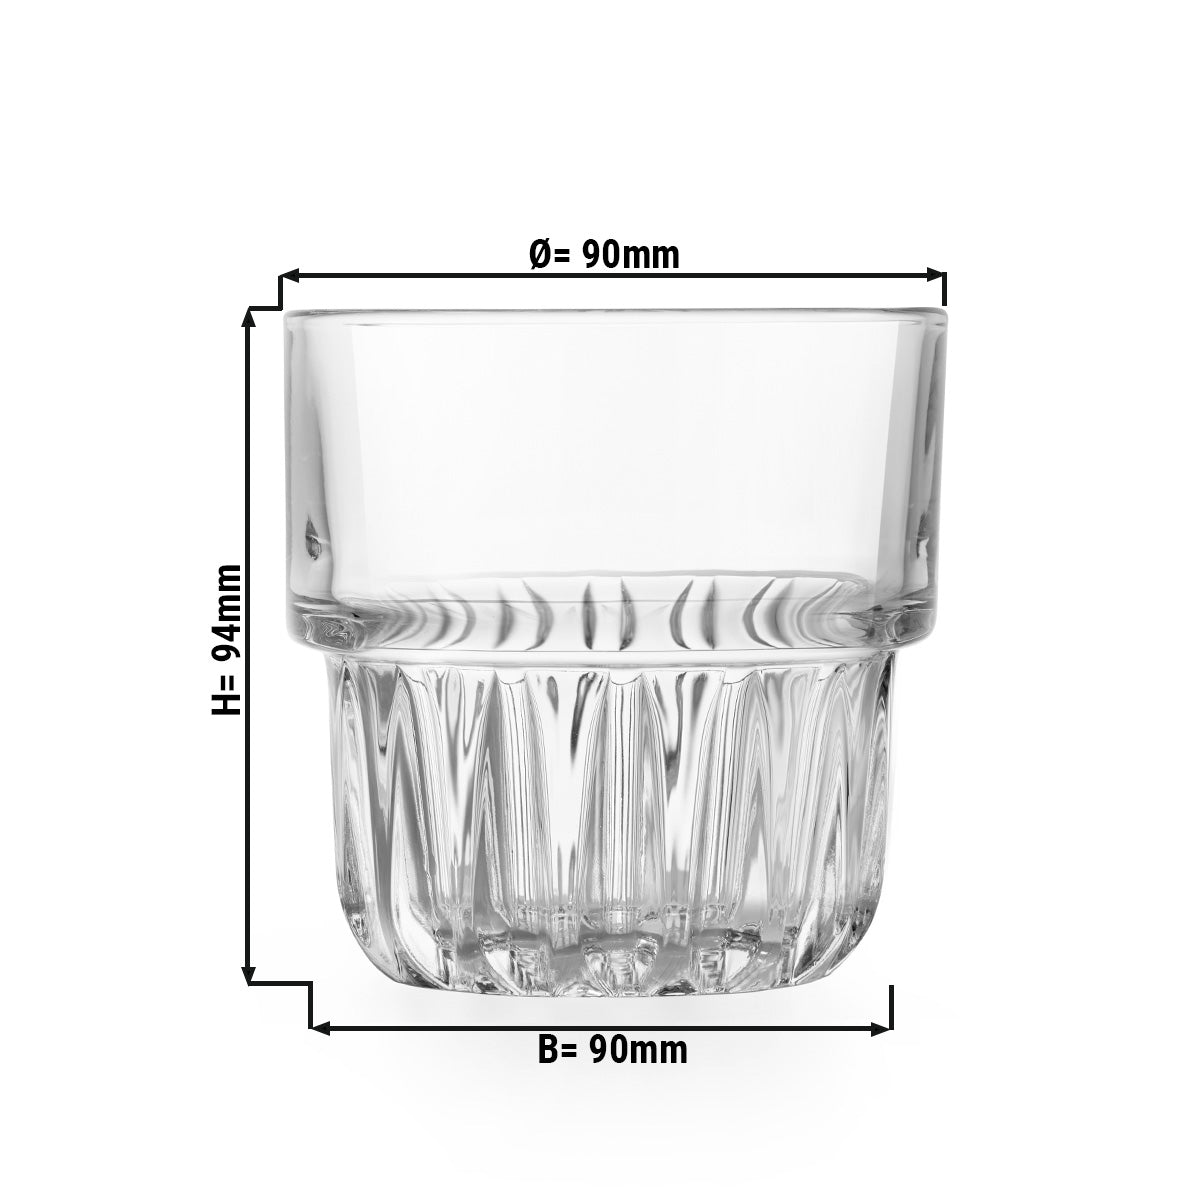 (12 stk.) Drikkeglass til alle formål - TOKIO - 355 ml - Gjennomsiktig